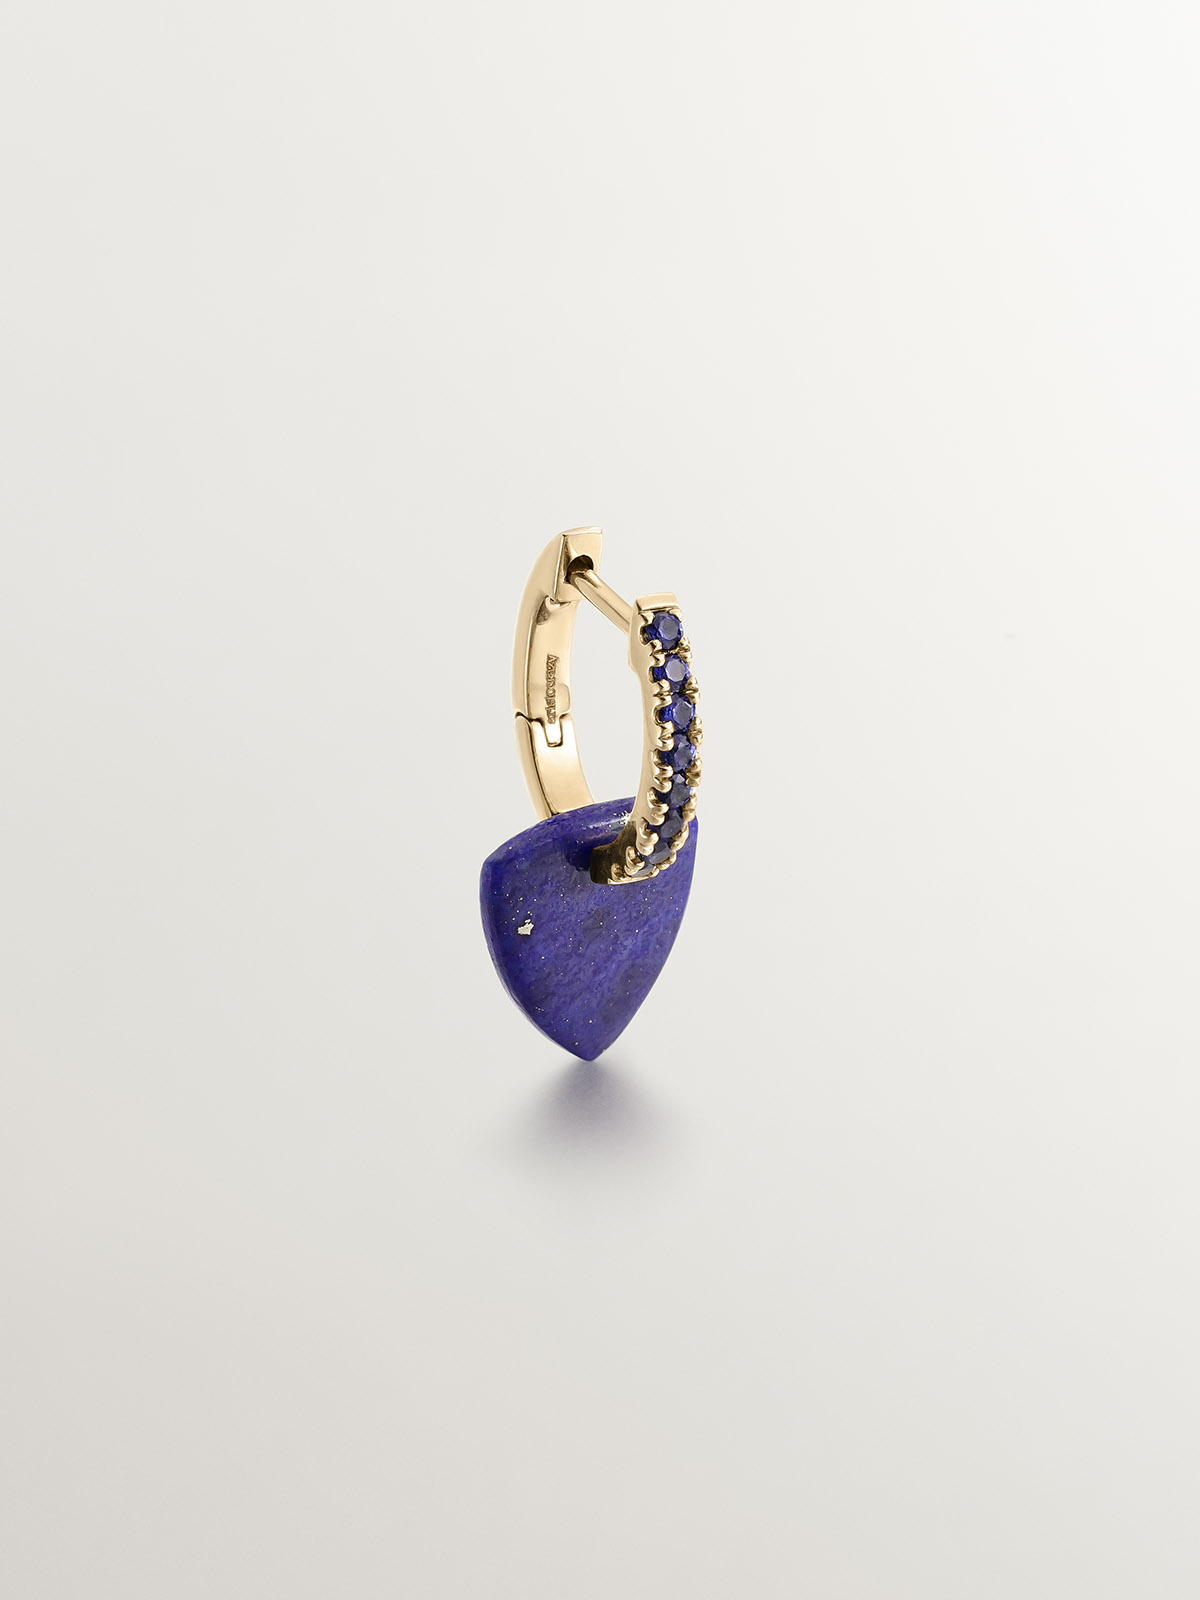 Boucle d'oreille unique en or jaune 9 carats avec saphirs bleus et pendentif en lapis-lazuli bleu